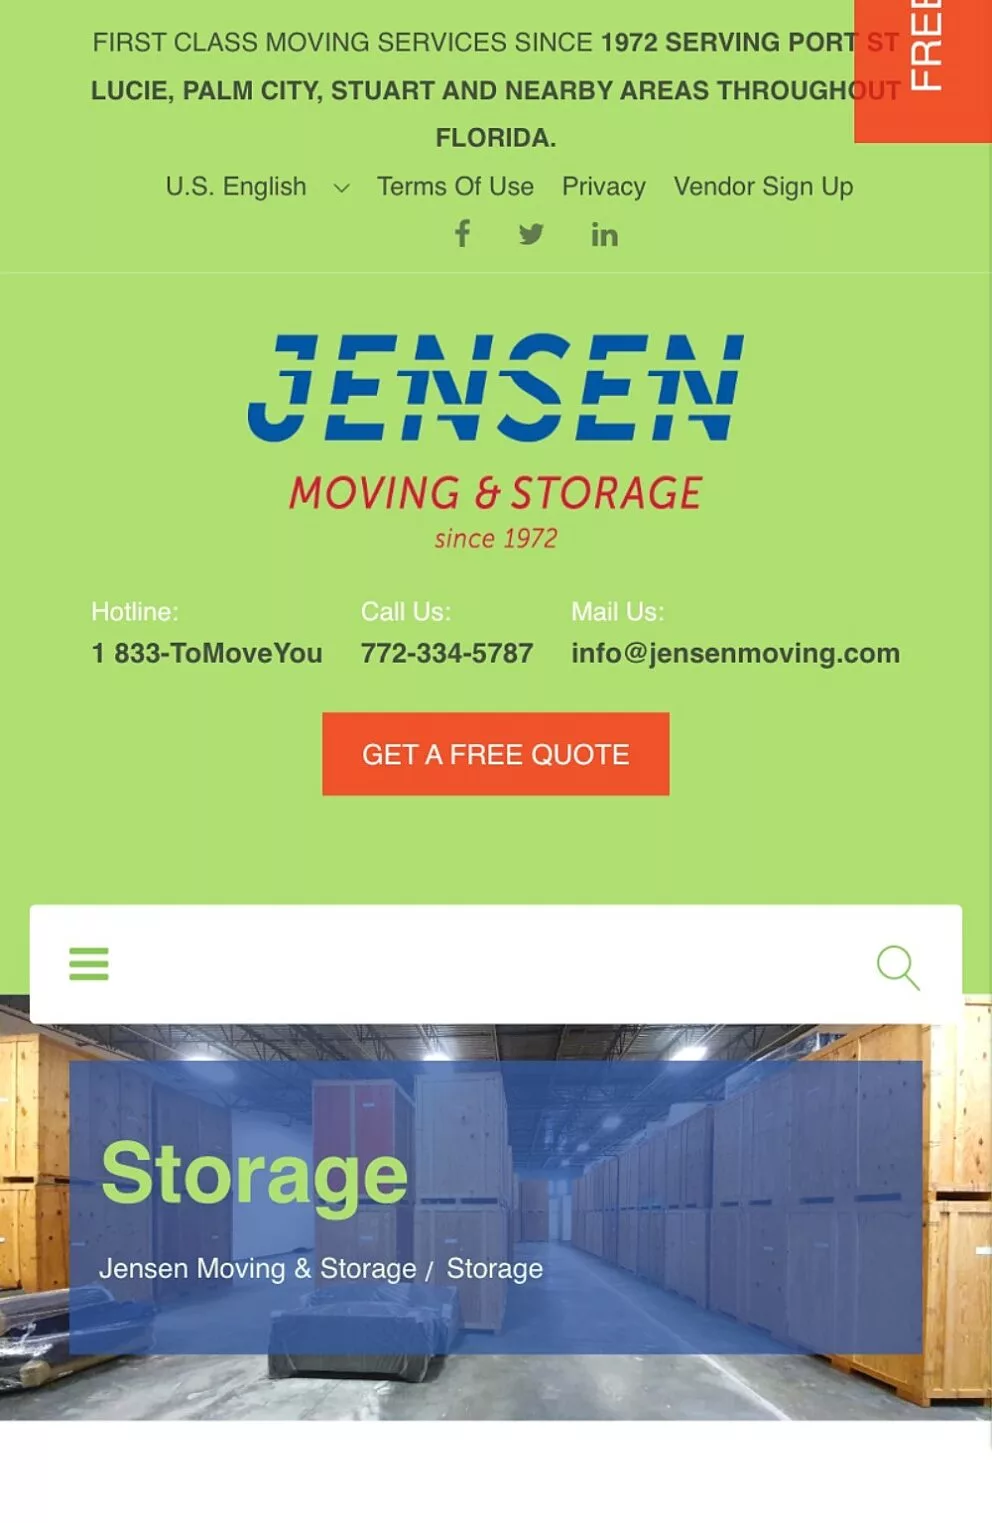 JENSEN Moving & Storage -  - Craft CMS Website (mehrsprachig)